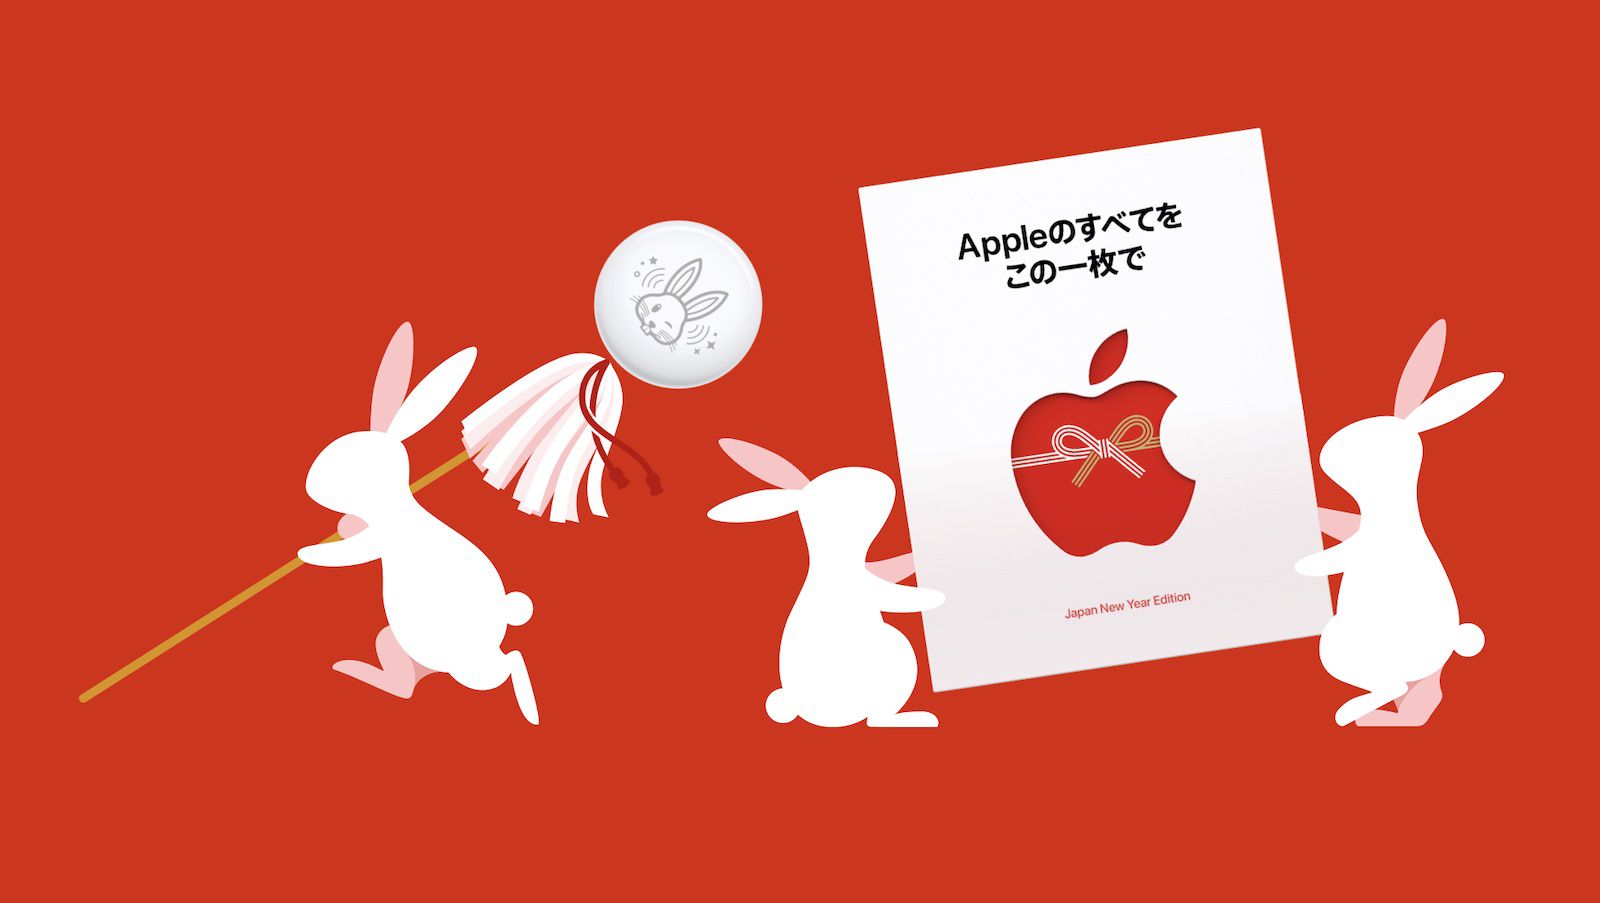 Apple tặng miễn phí AirTags phiên bản giới hạn khi mua iPhone tại Nhật Bản nhằm chào mừng Tết Nguyên đán